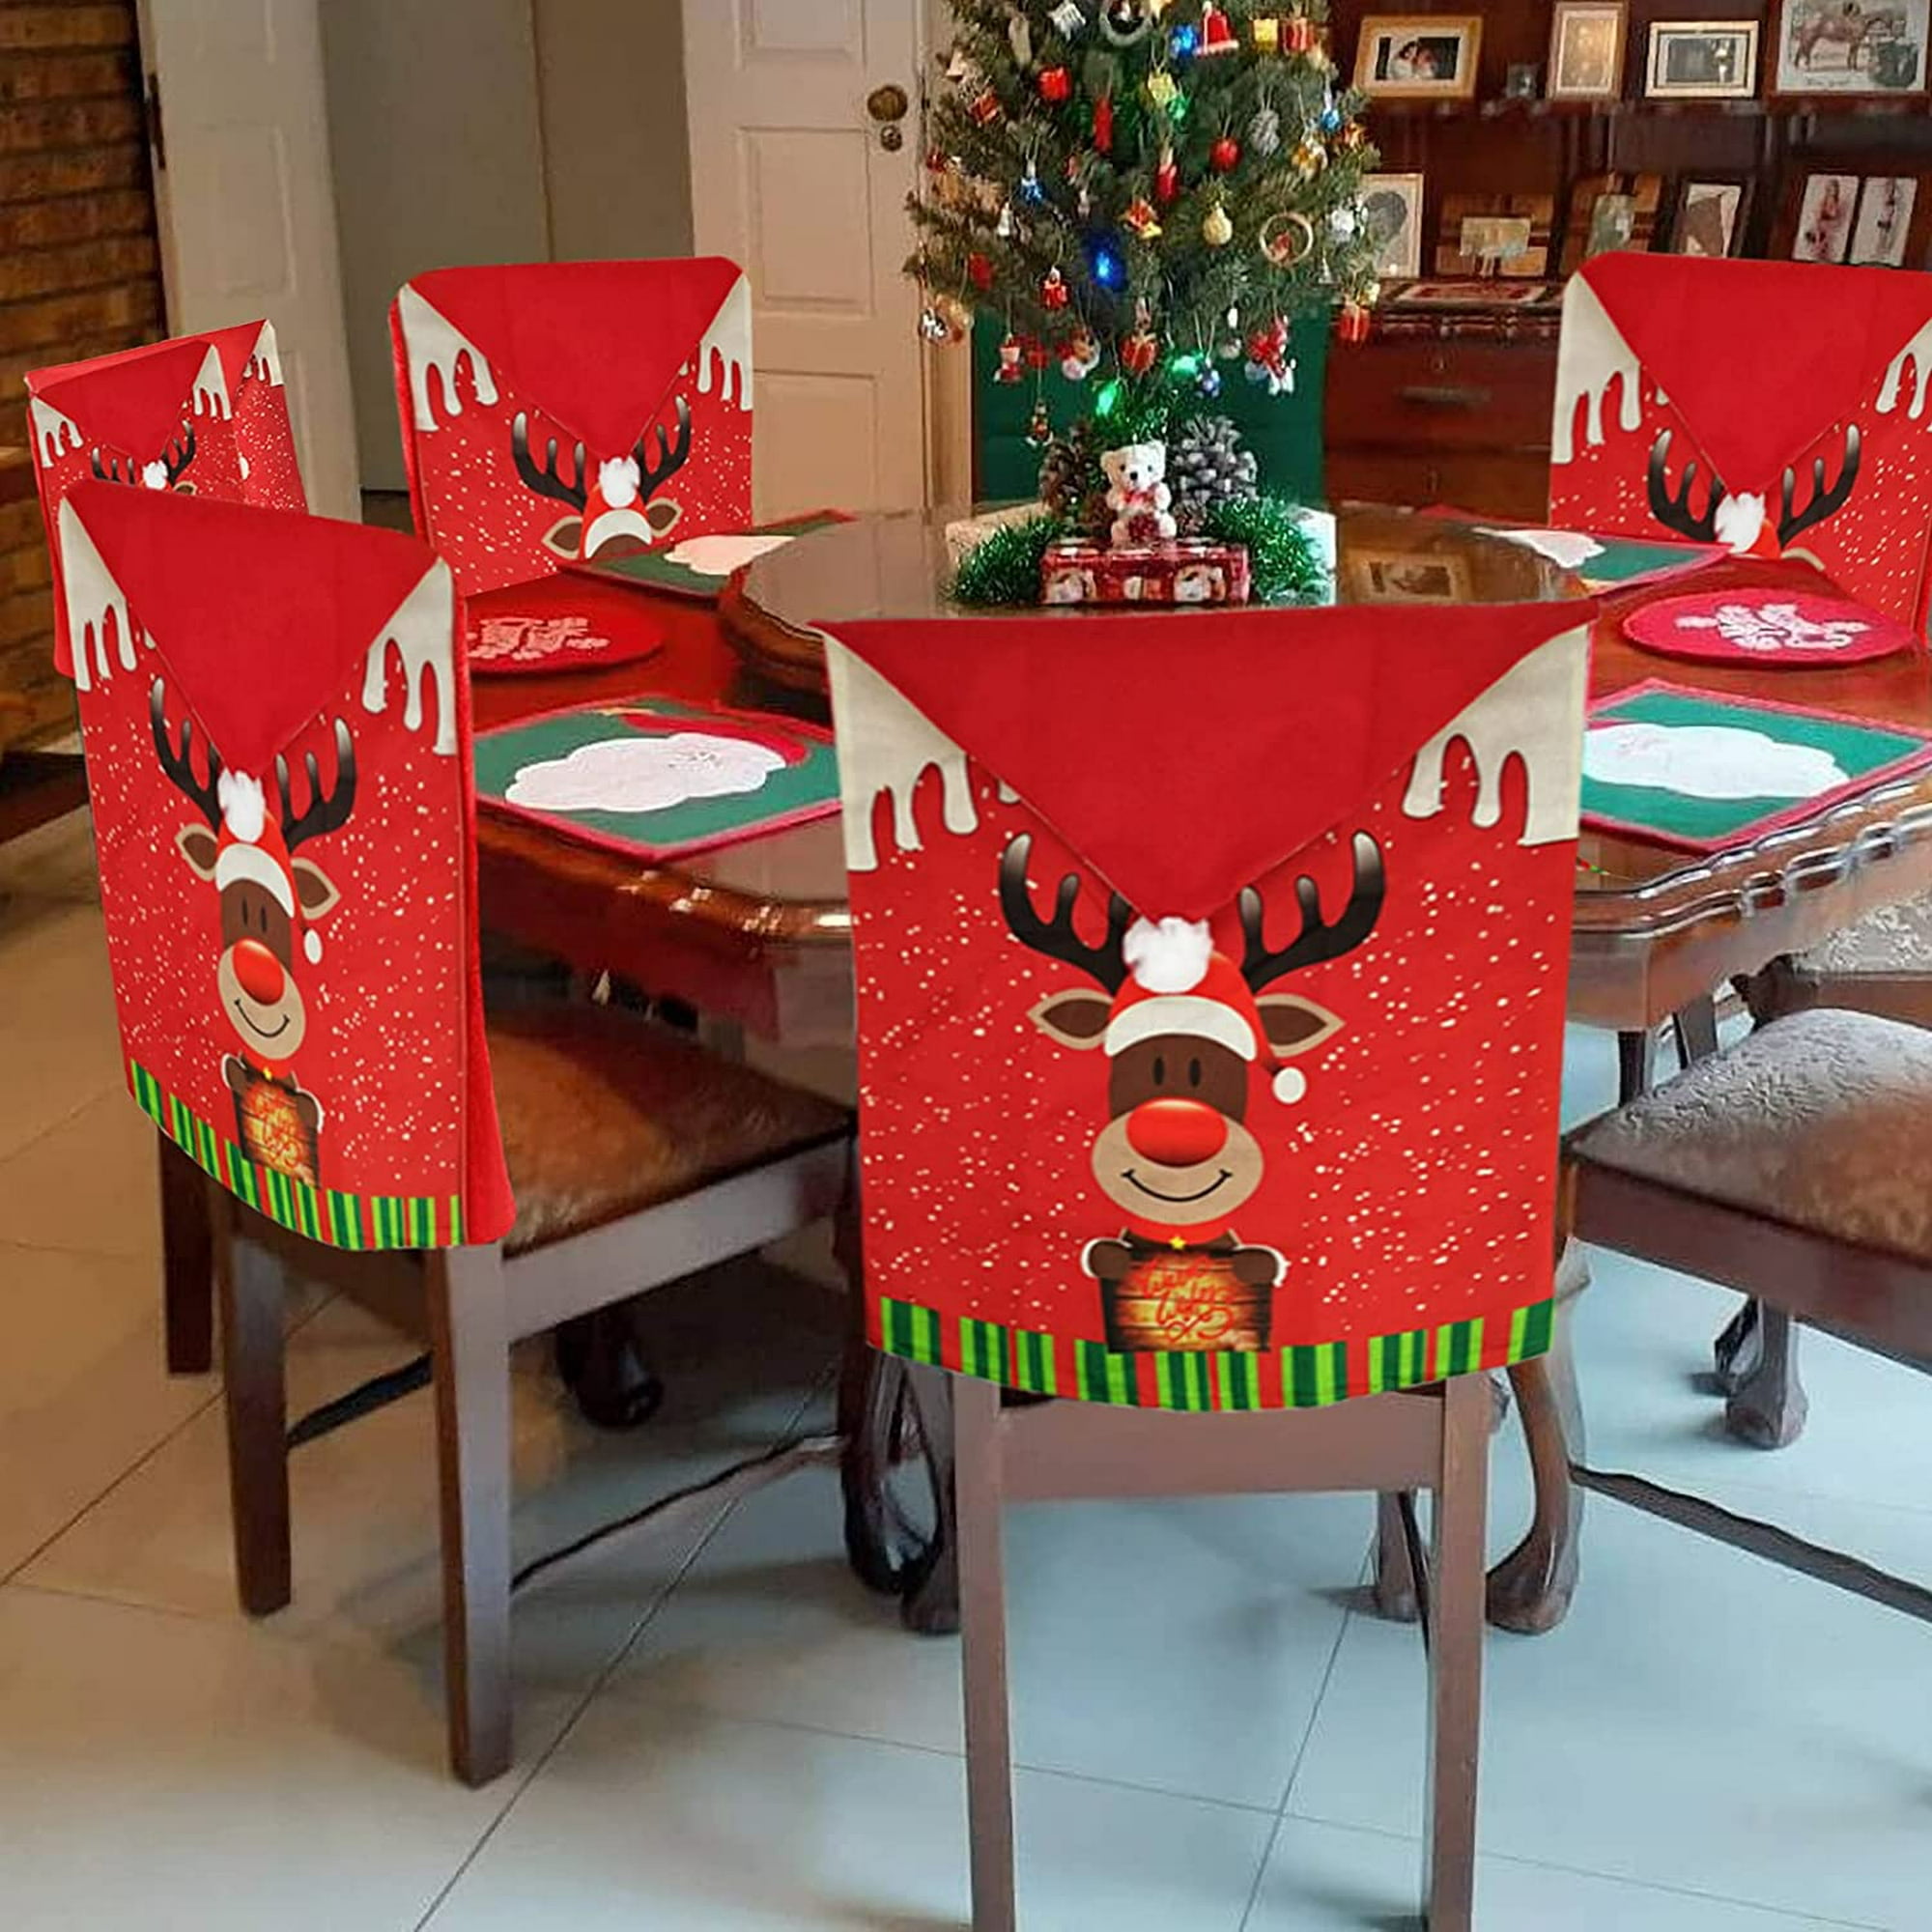 ShenMo, 4 Uds., fundas navideñas para sillas, fundas de tela para añadir  sillas, decoración navideña, se adapta a todas las sillas, fundas para  sillas, fundas para muebles LingWen 9024715196750